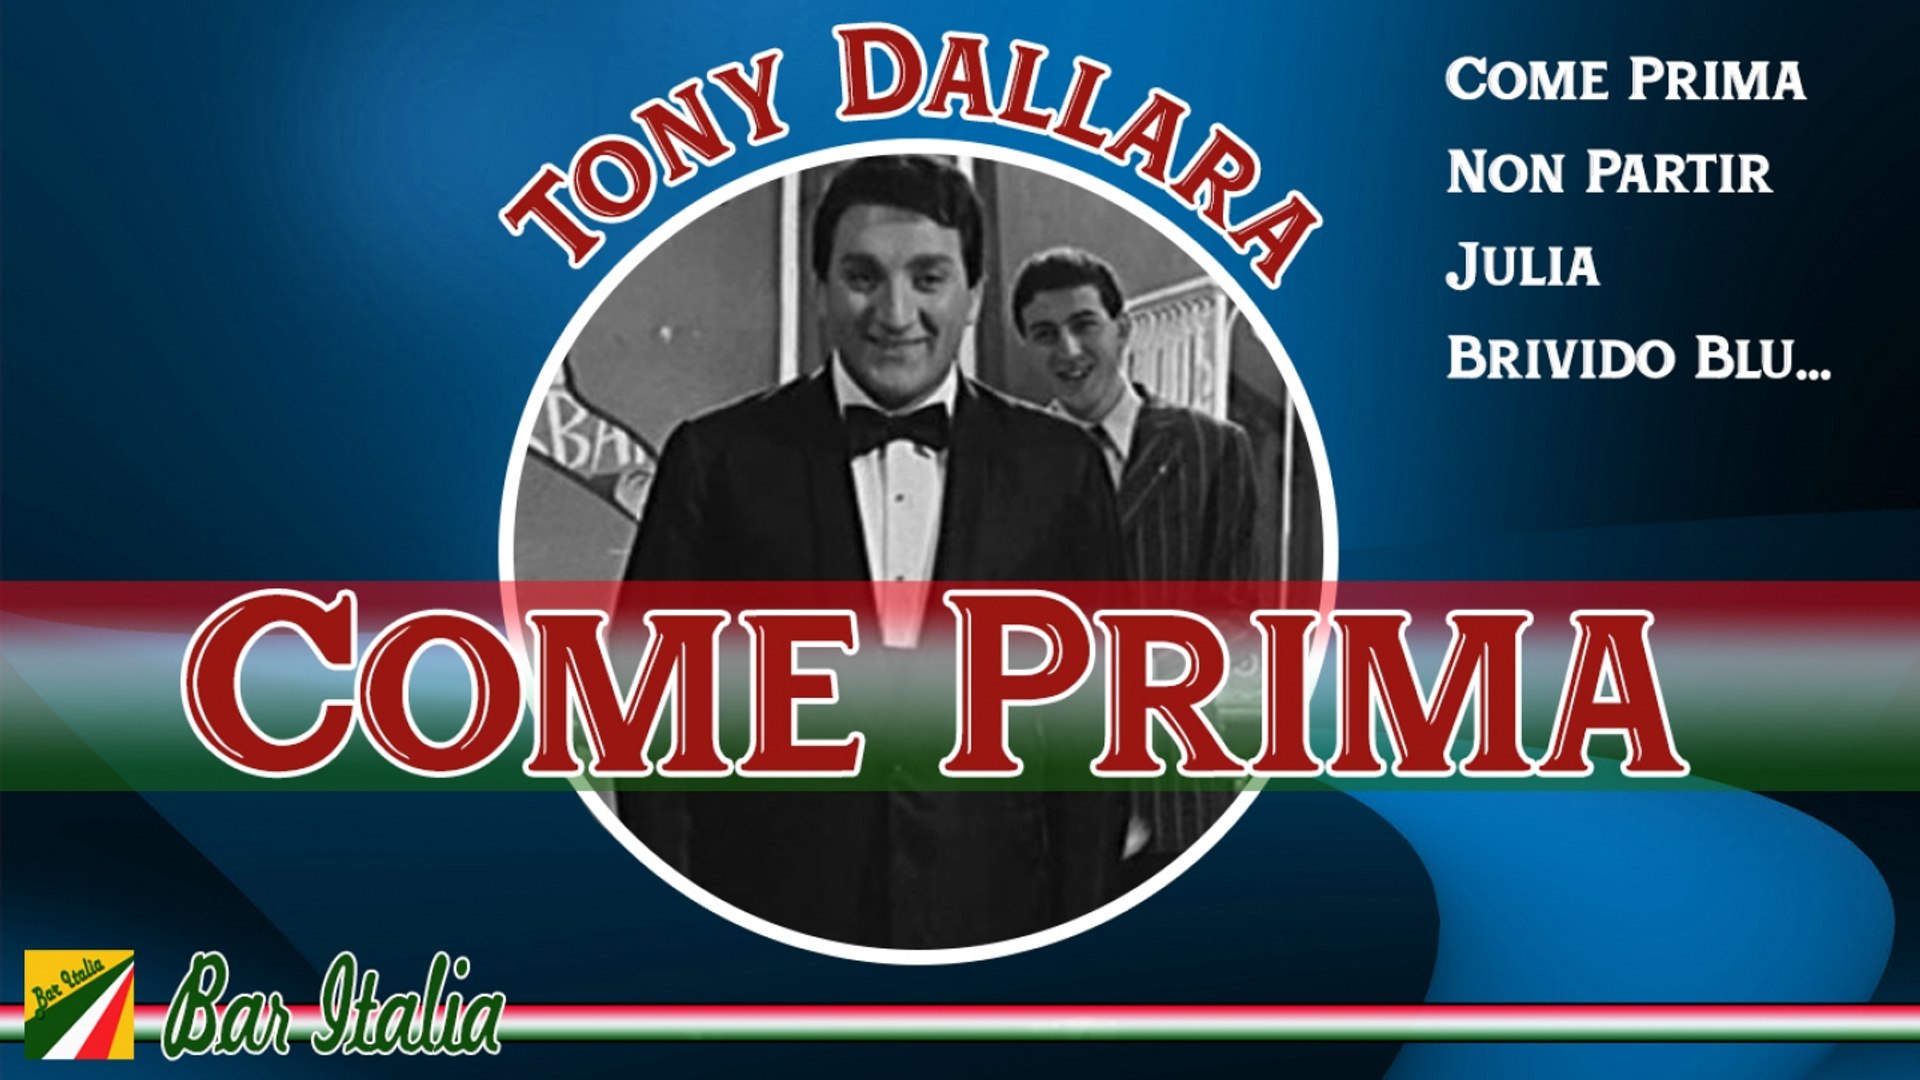 Коме прима. Tony Dallara come prima. Tony Dallara. Tony Dallara – canzone best Star best album. The best Italian Songs Canzona.